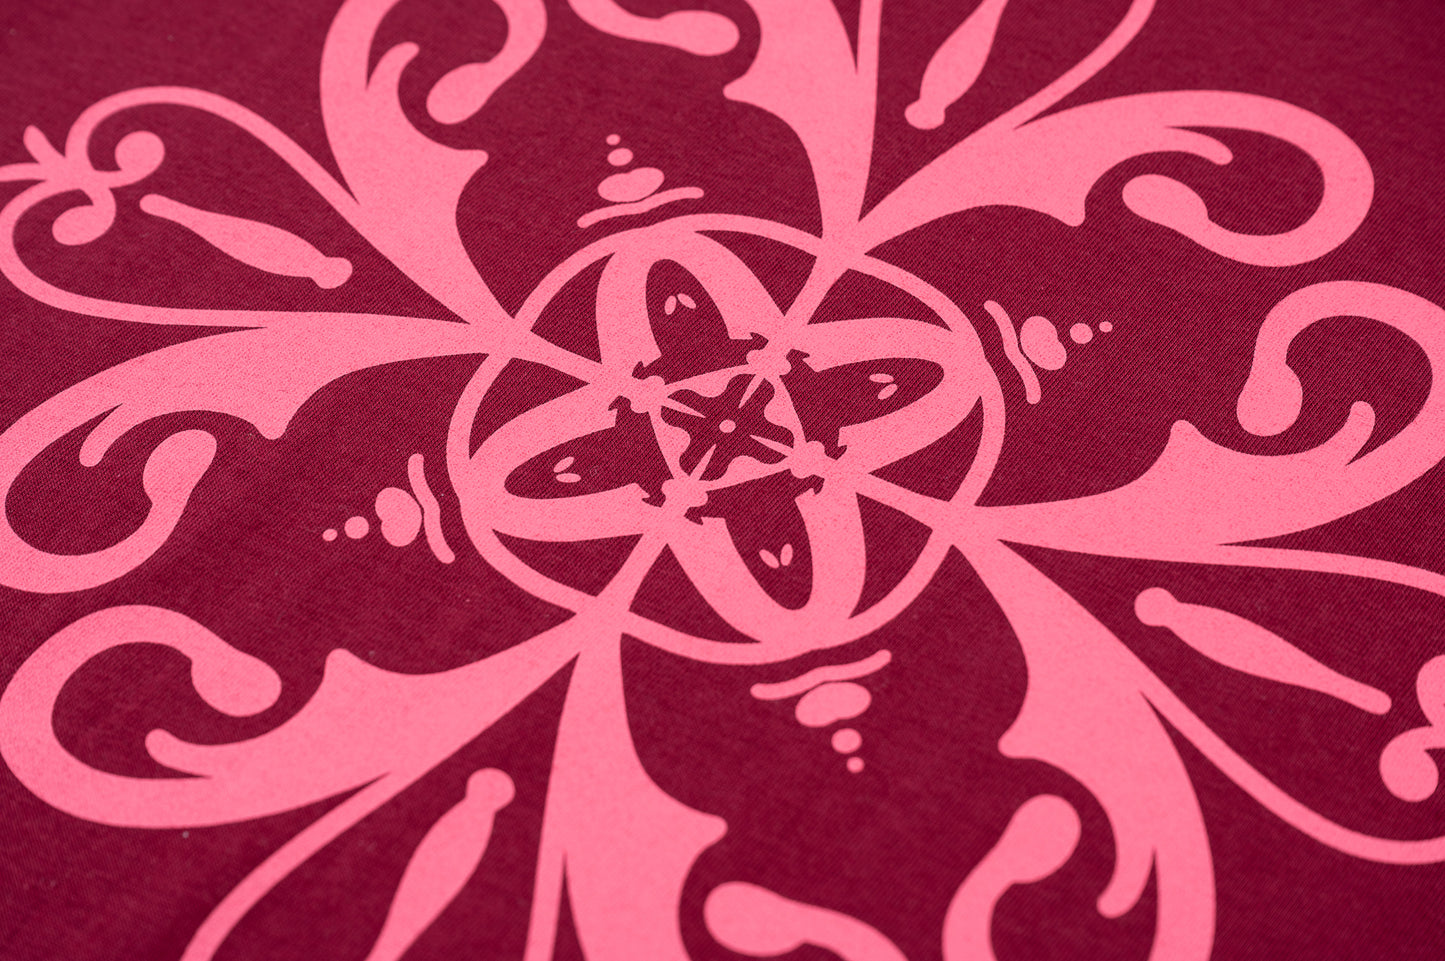 Detalle de diseño de azulejo rosa sobre espalda en camiseta de manga corta unisex color burdeos